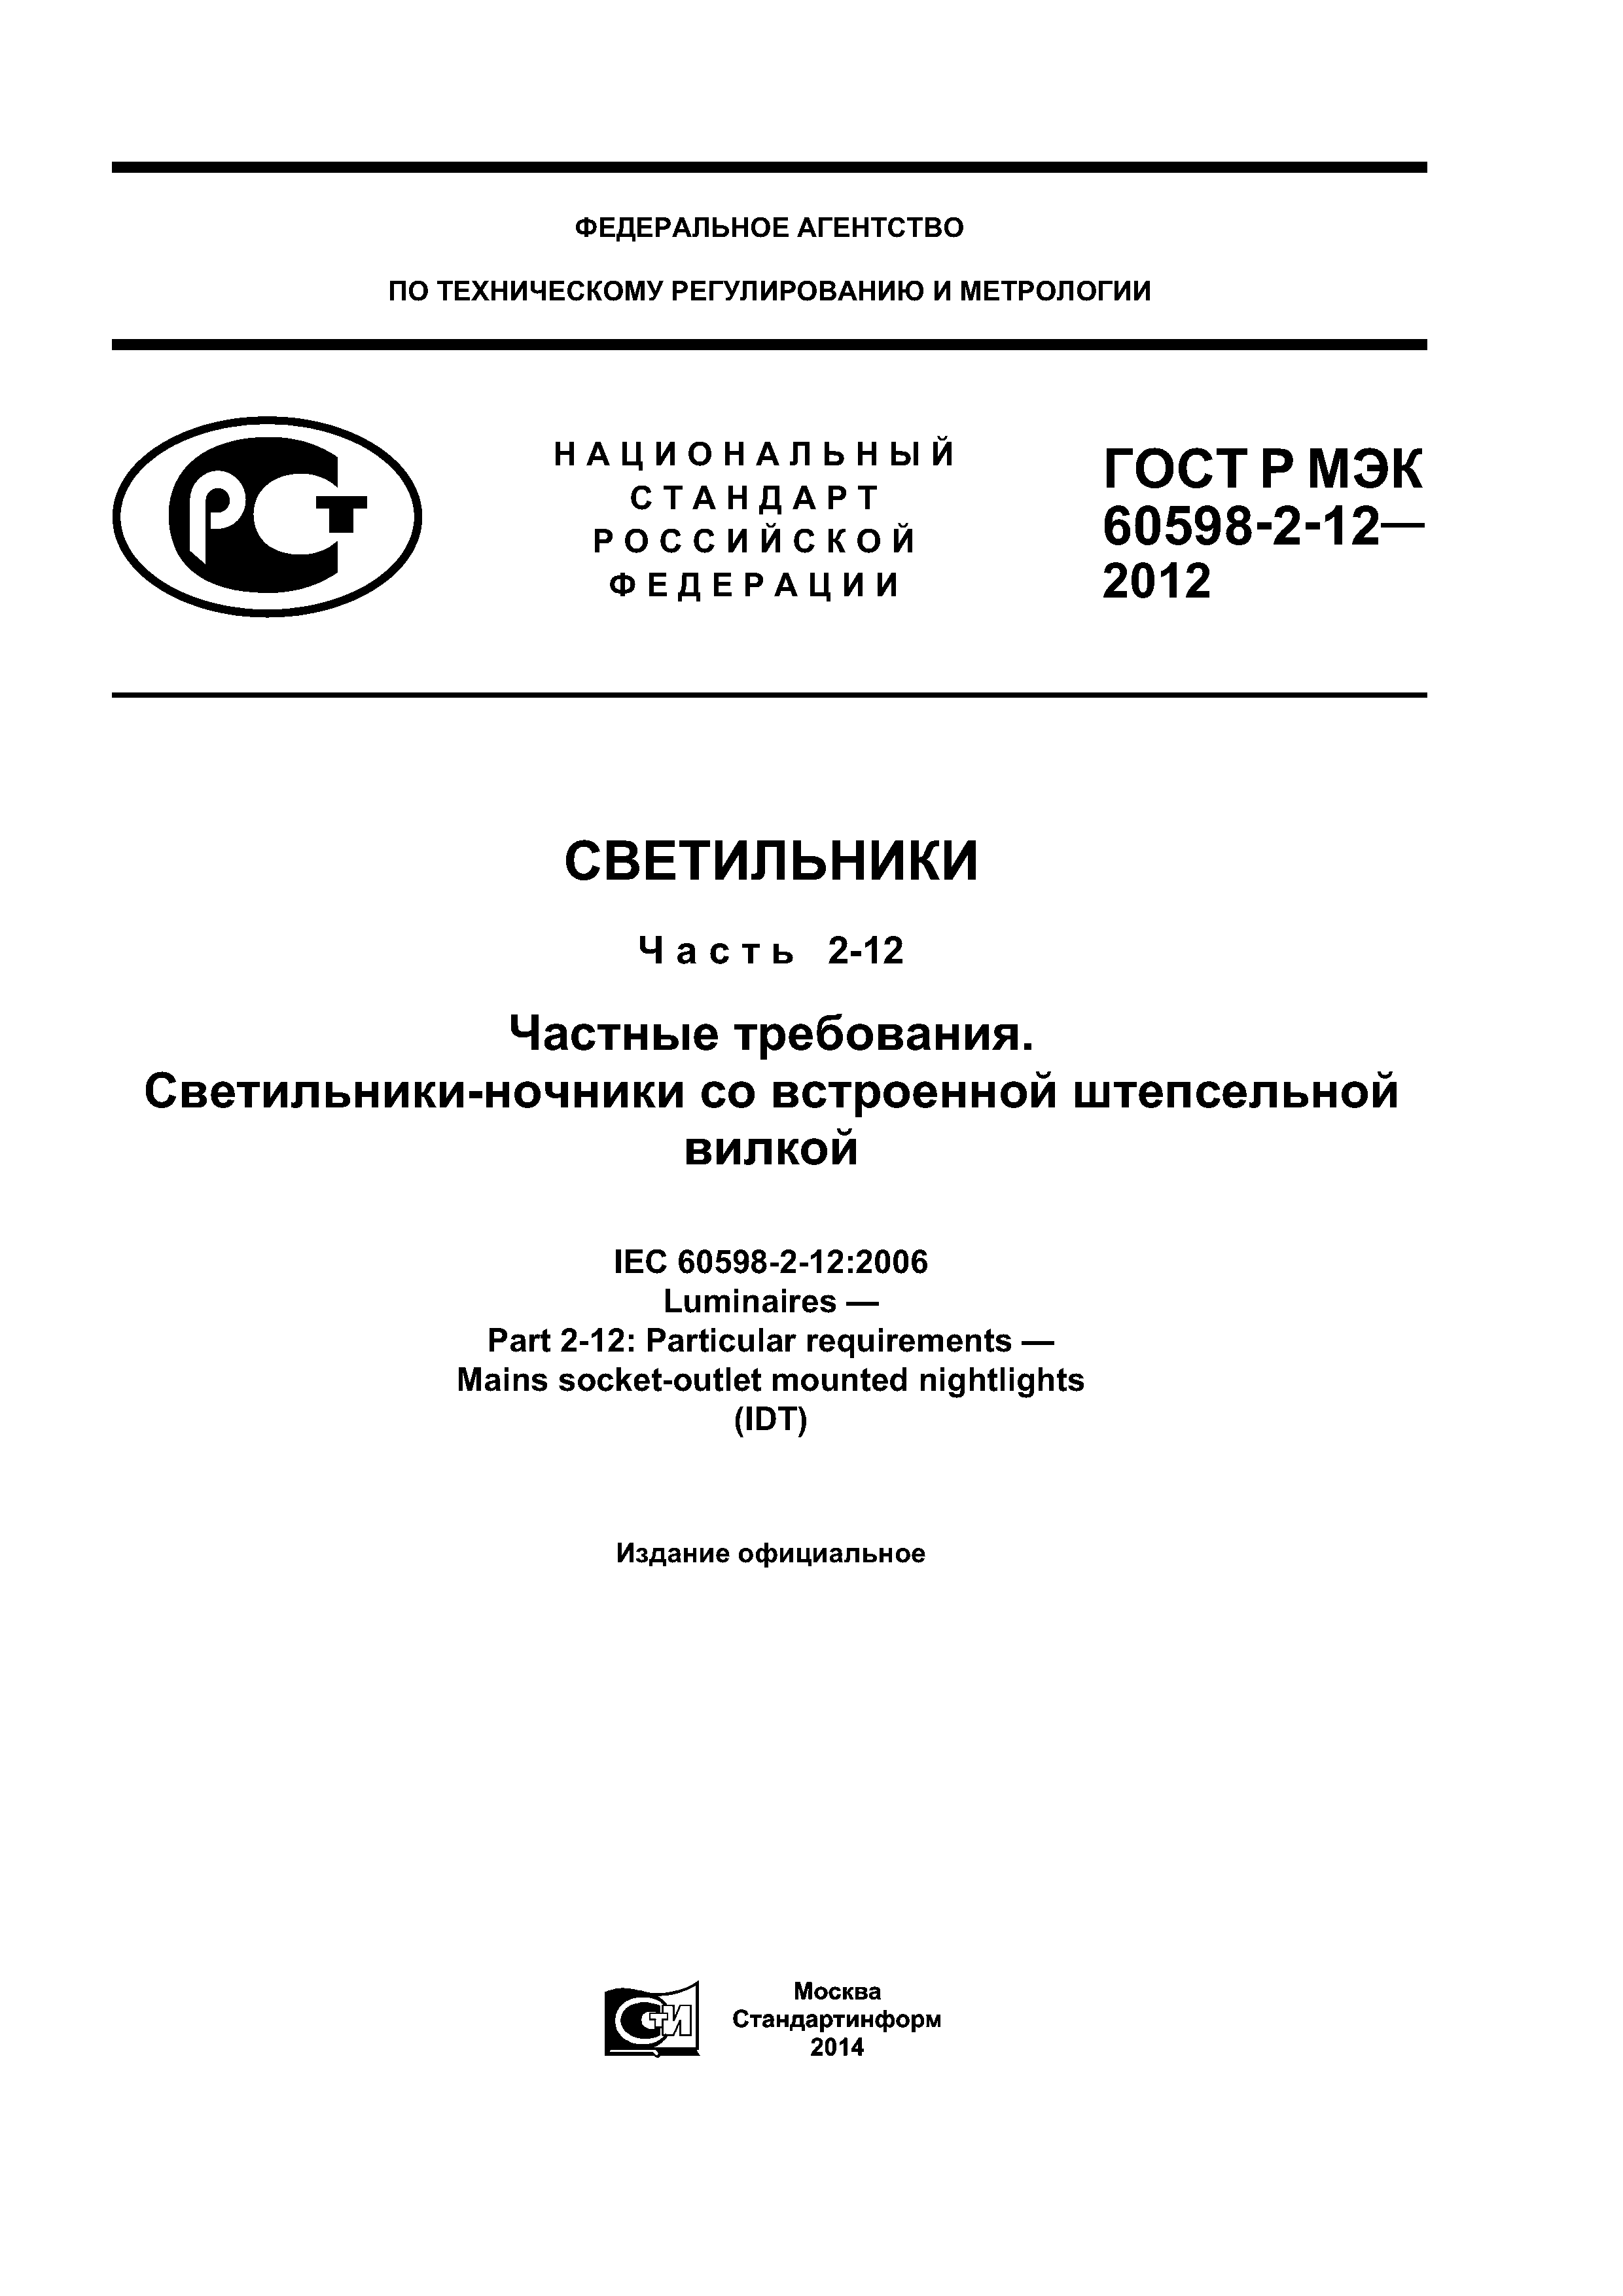 ГОСТ Р МЭК 60598-2-12-2012